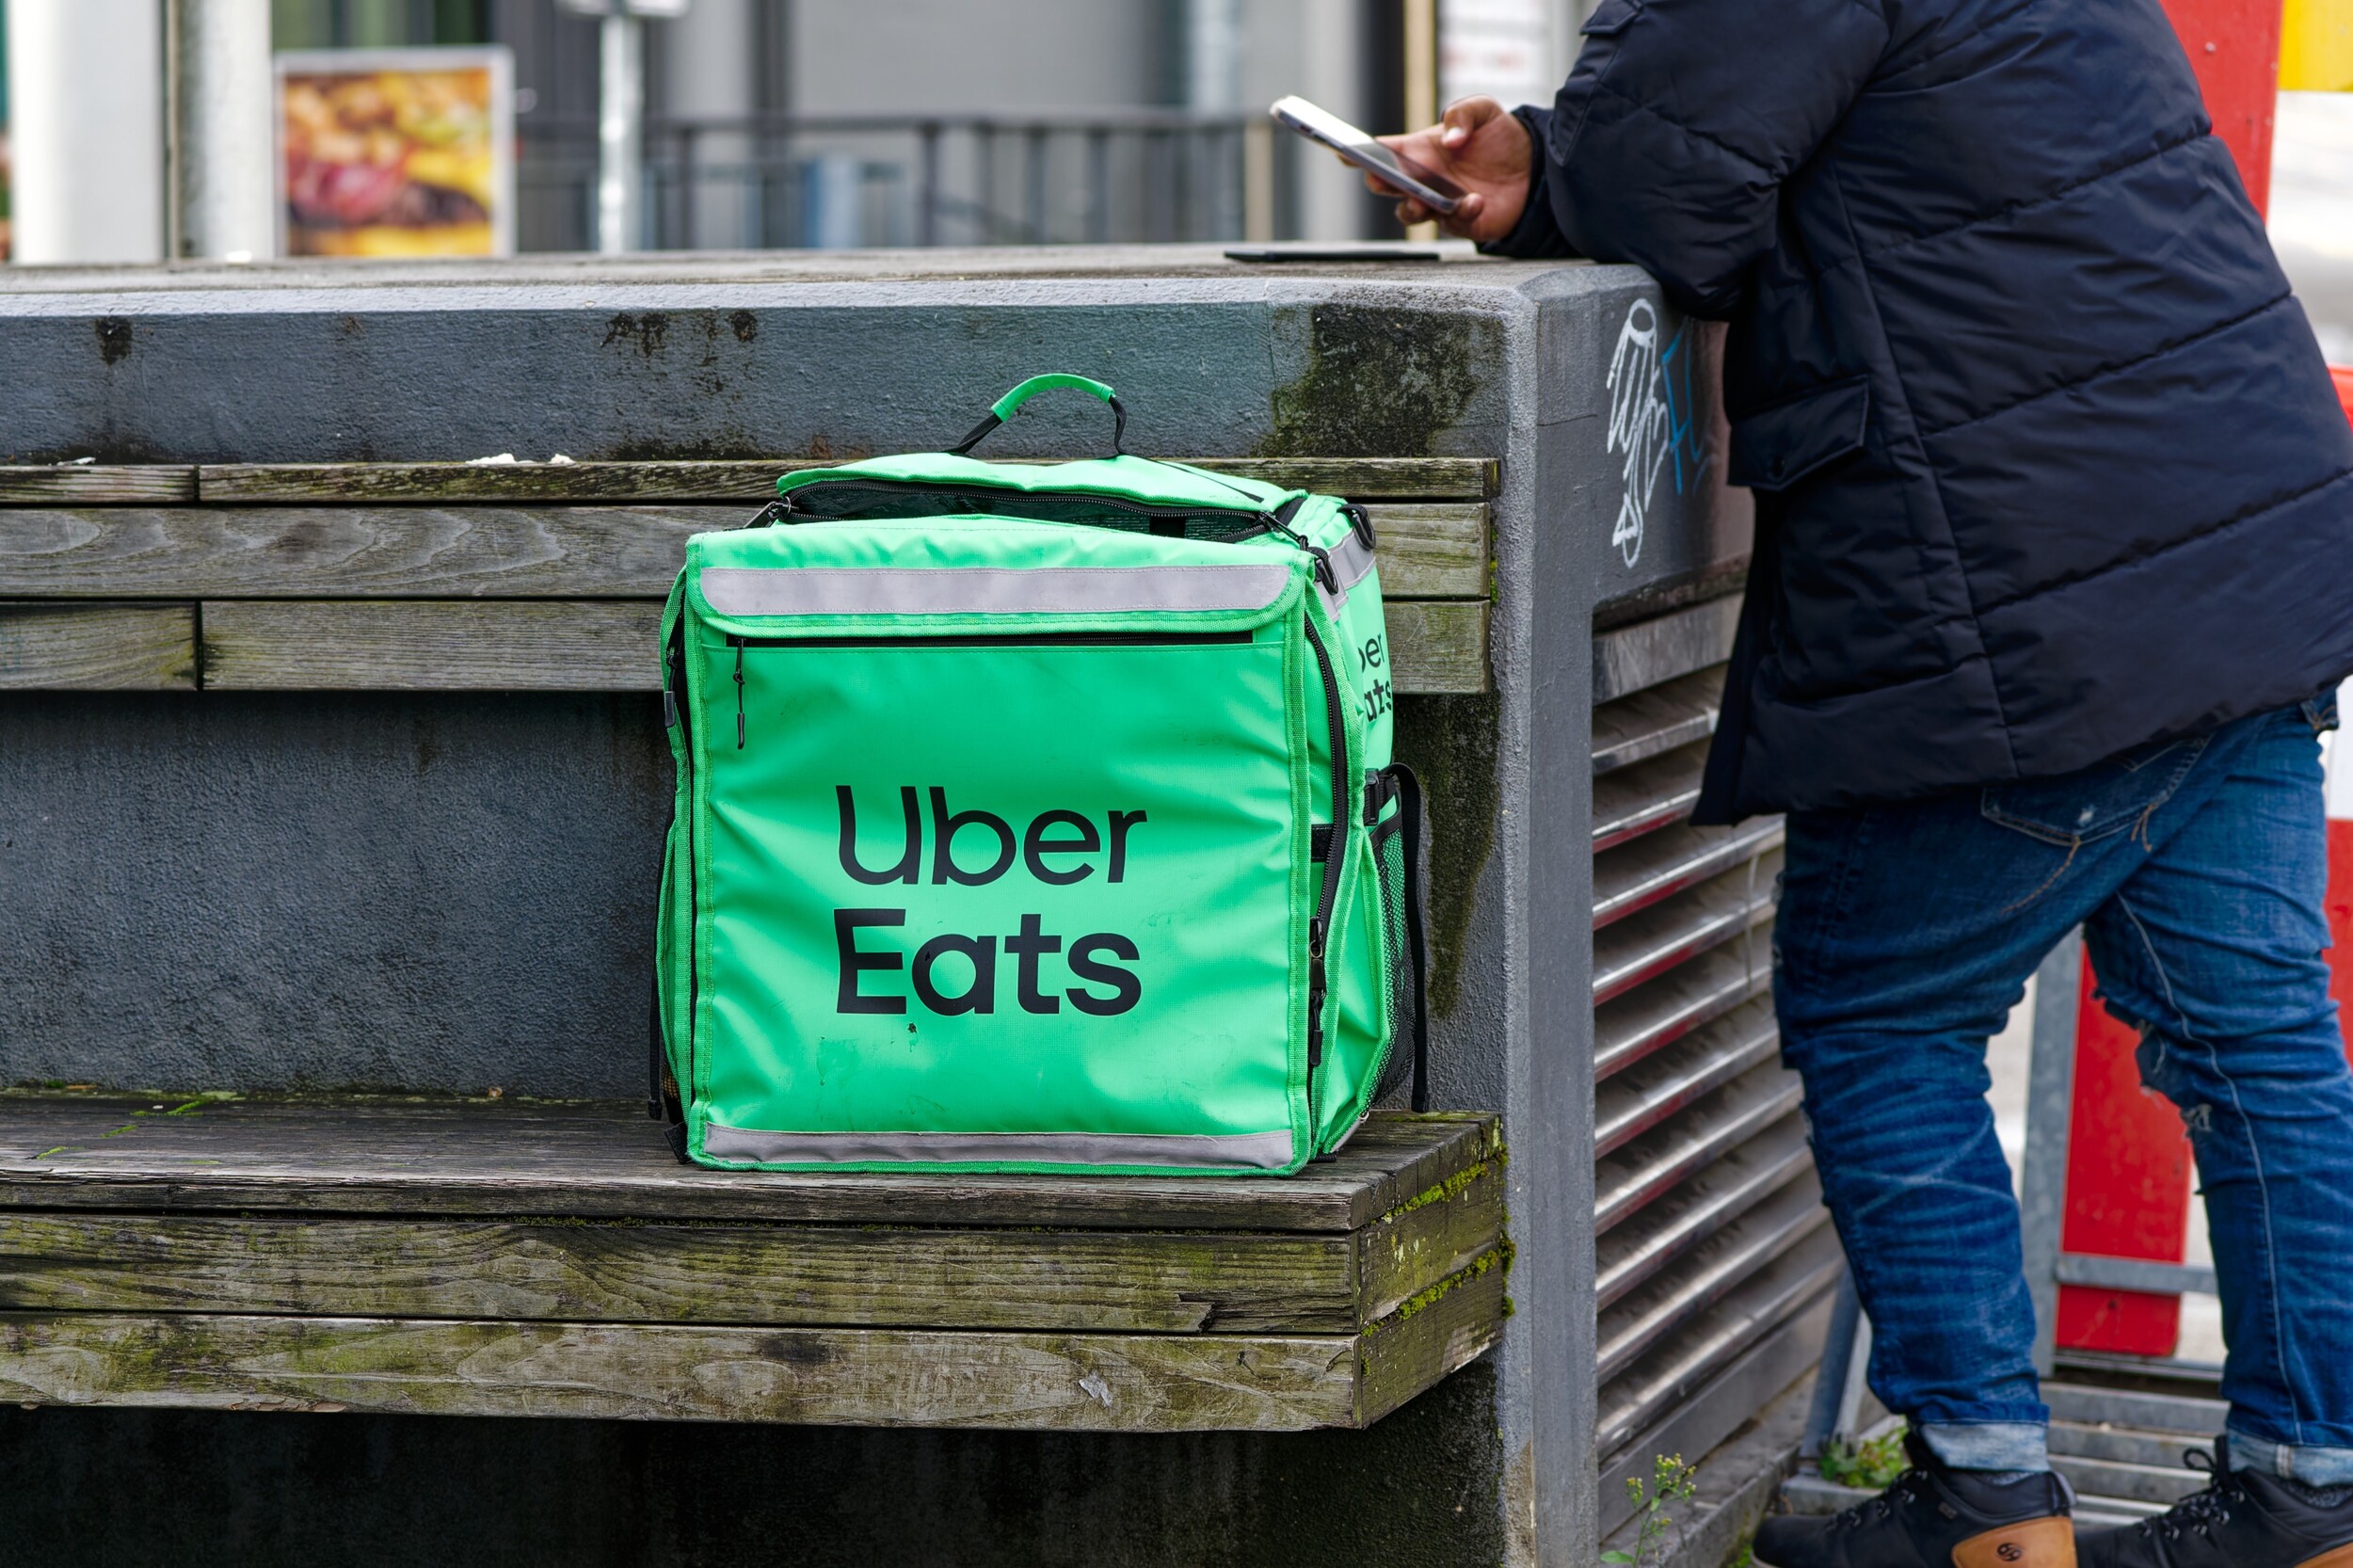 Les livreurs Uber Eats feront grève en décembre, commander votre repas risque d'être compliqué